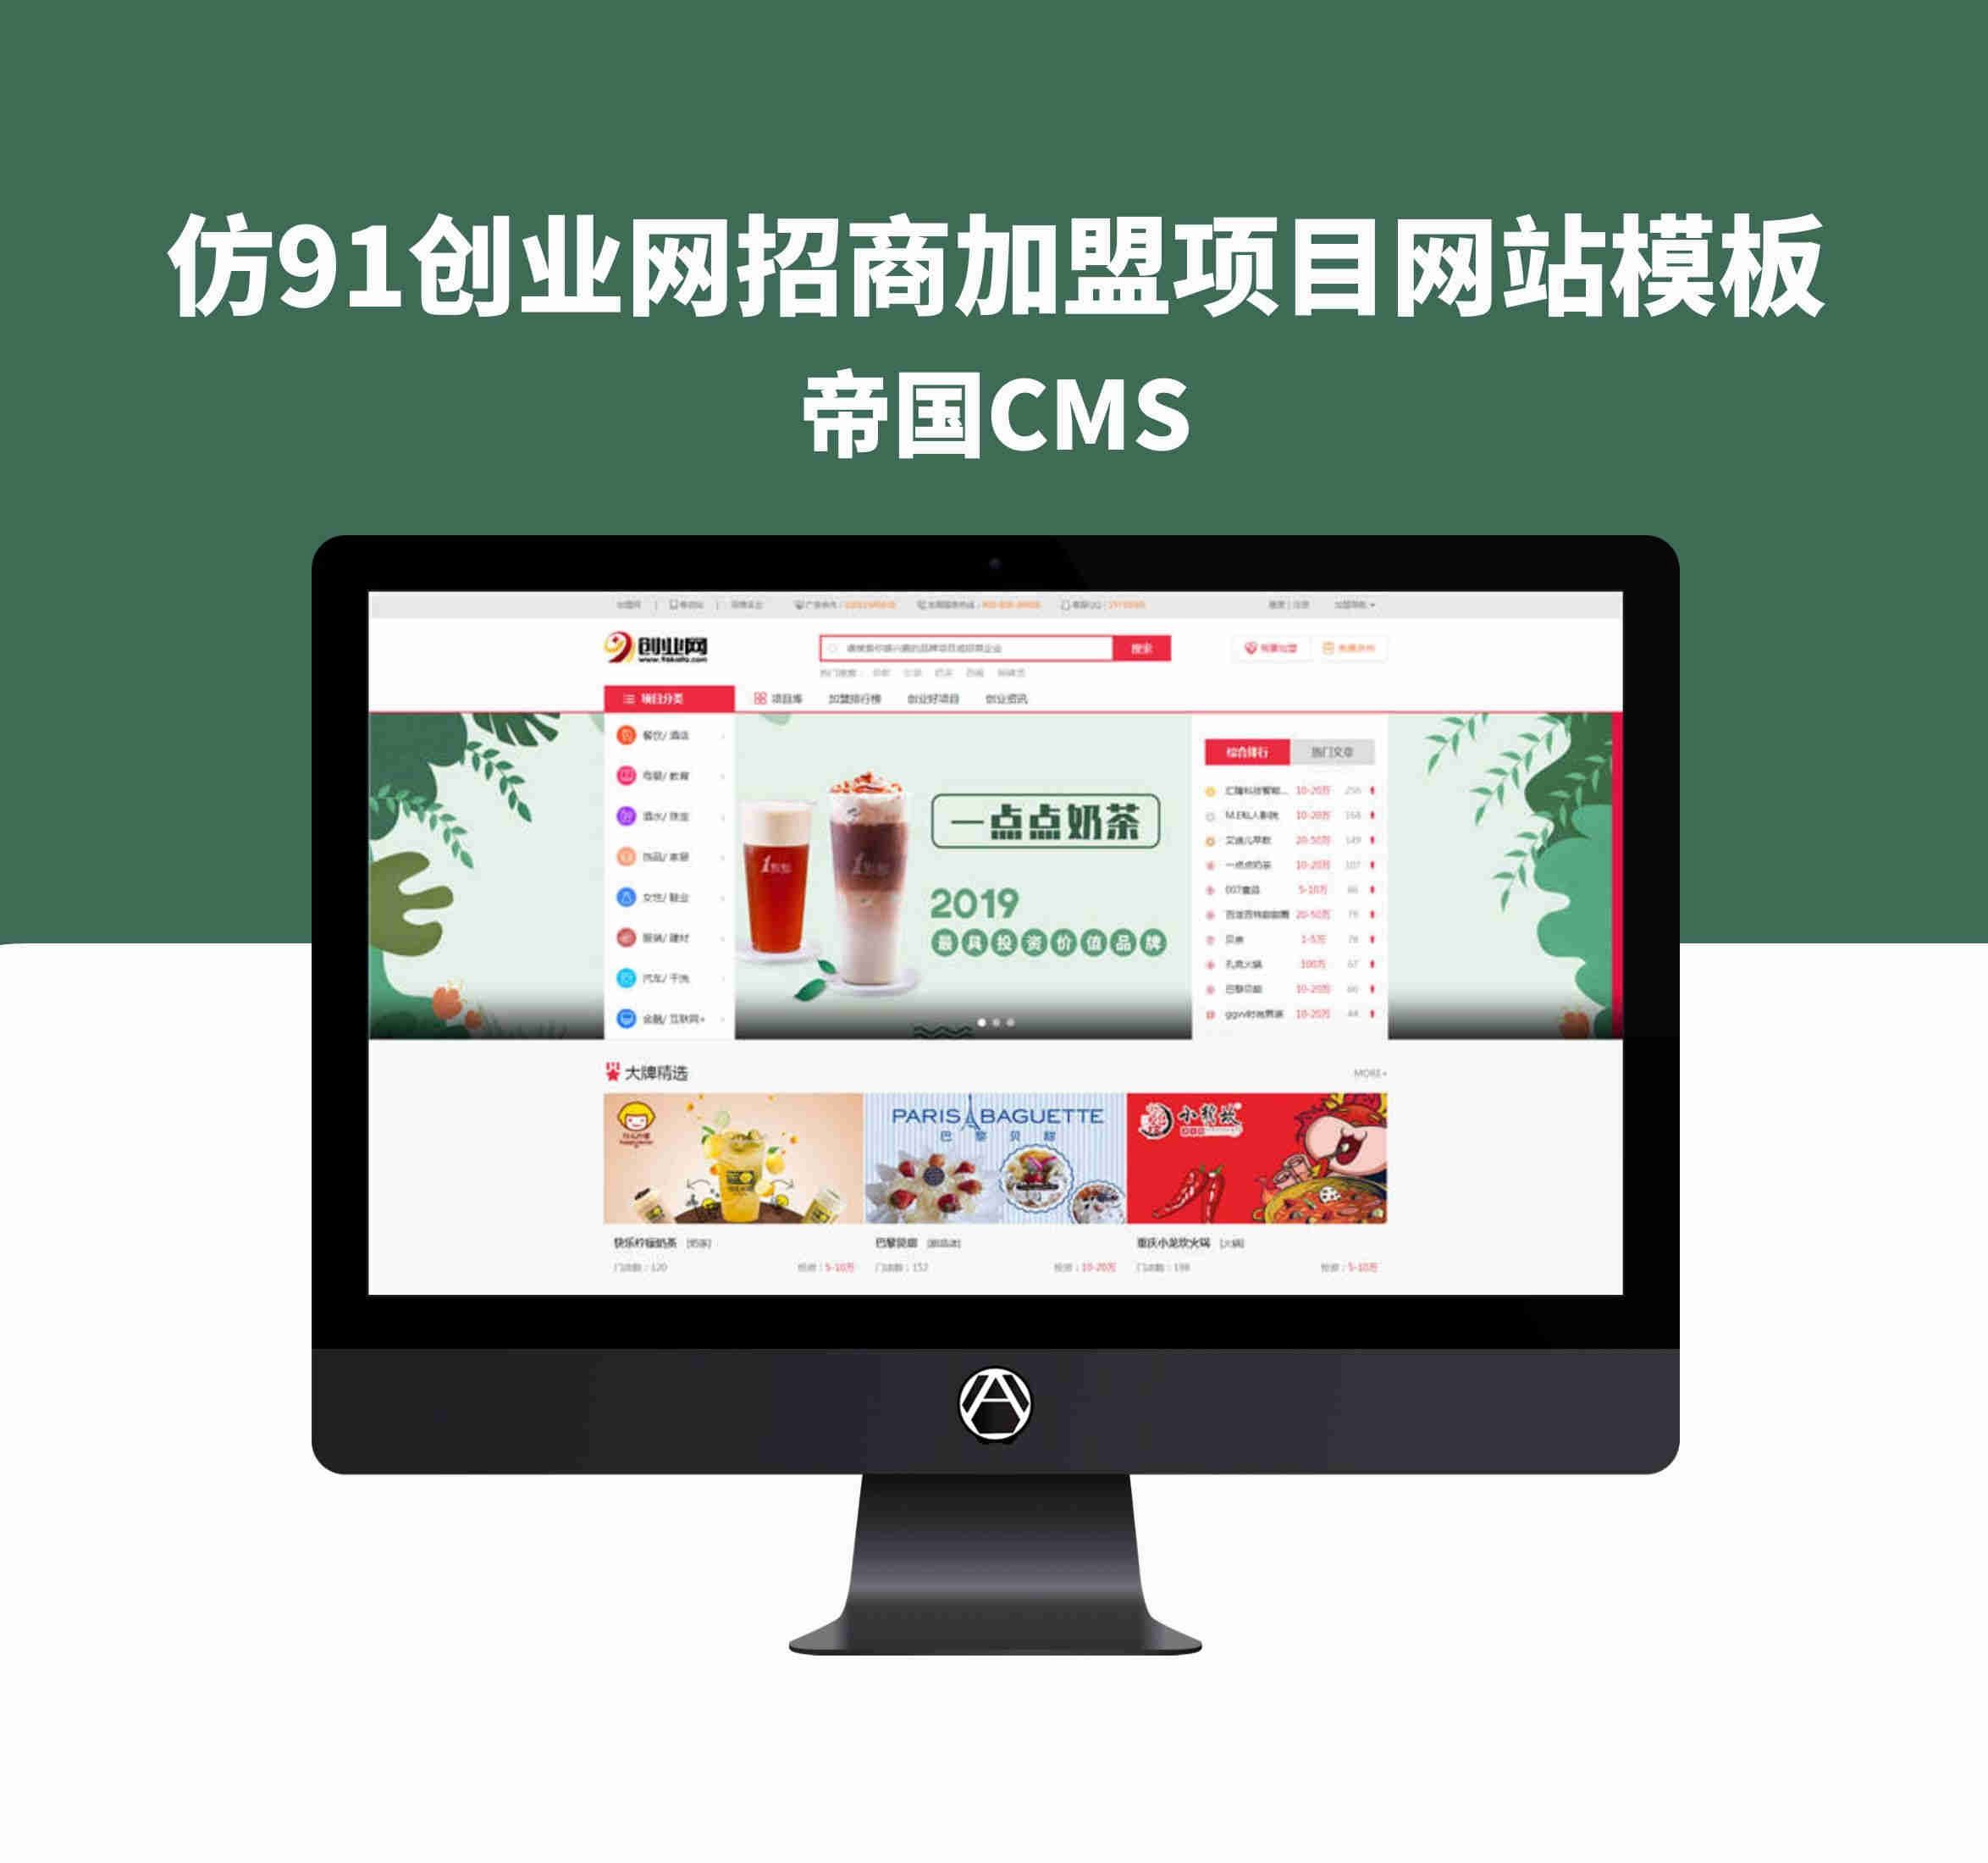 帝国cms-仿91创业网招商加盟项目网站模板整站源码